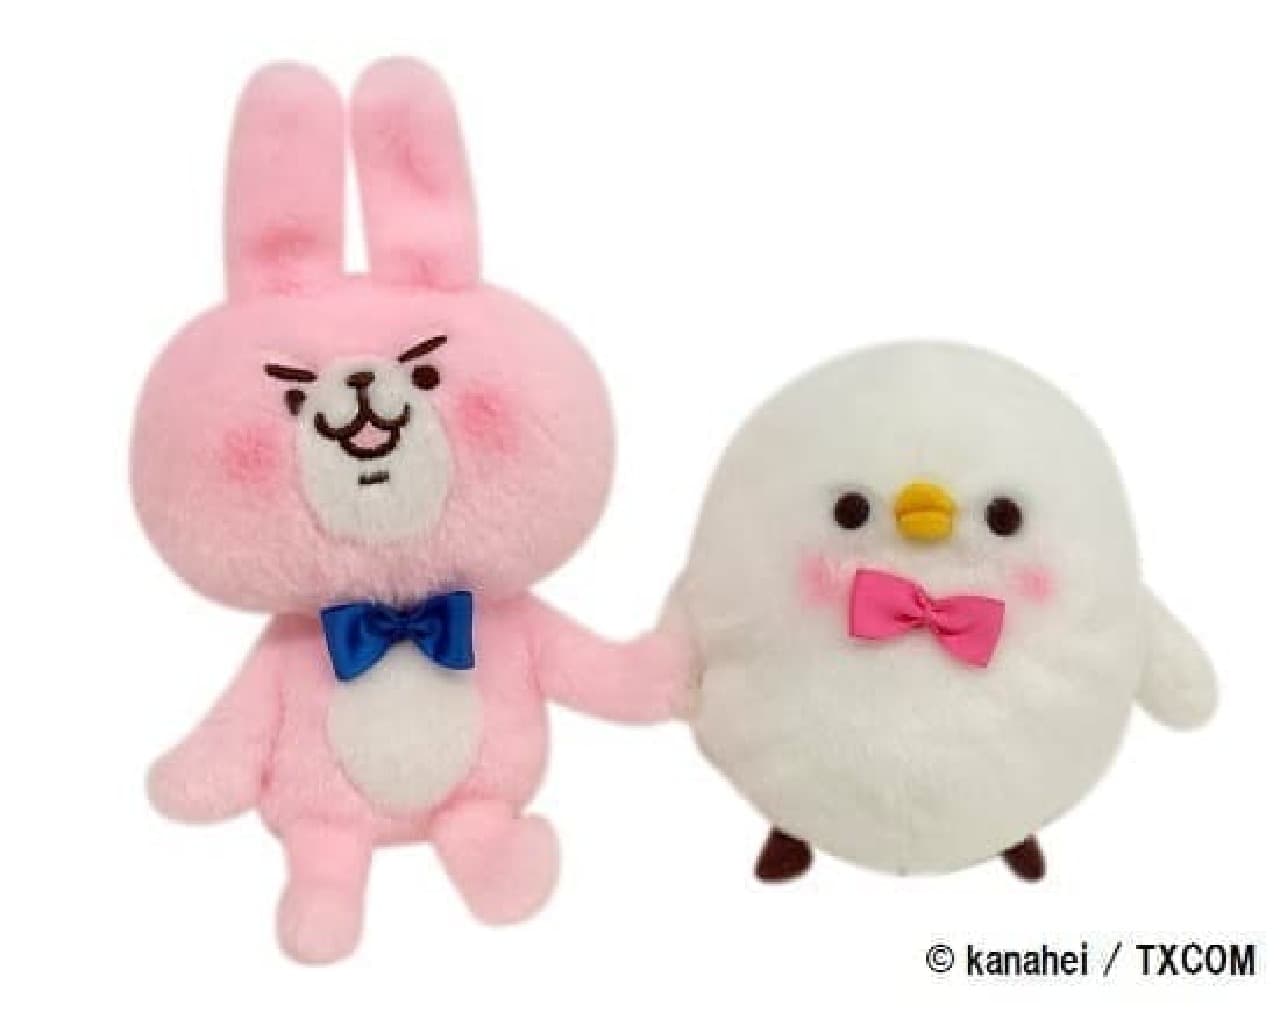 Pisuke and Rabbit Why isn't it a stuffed animal?